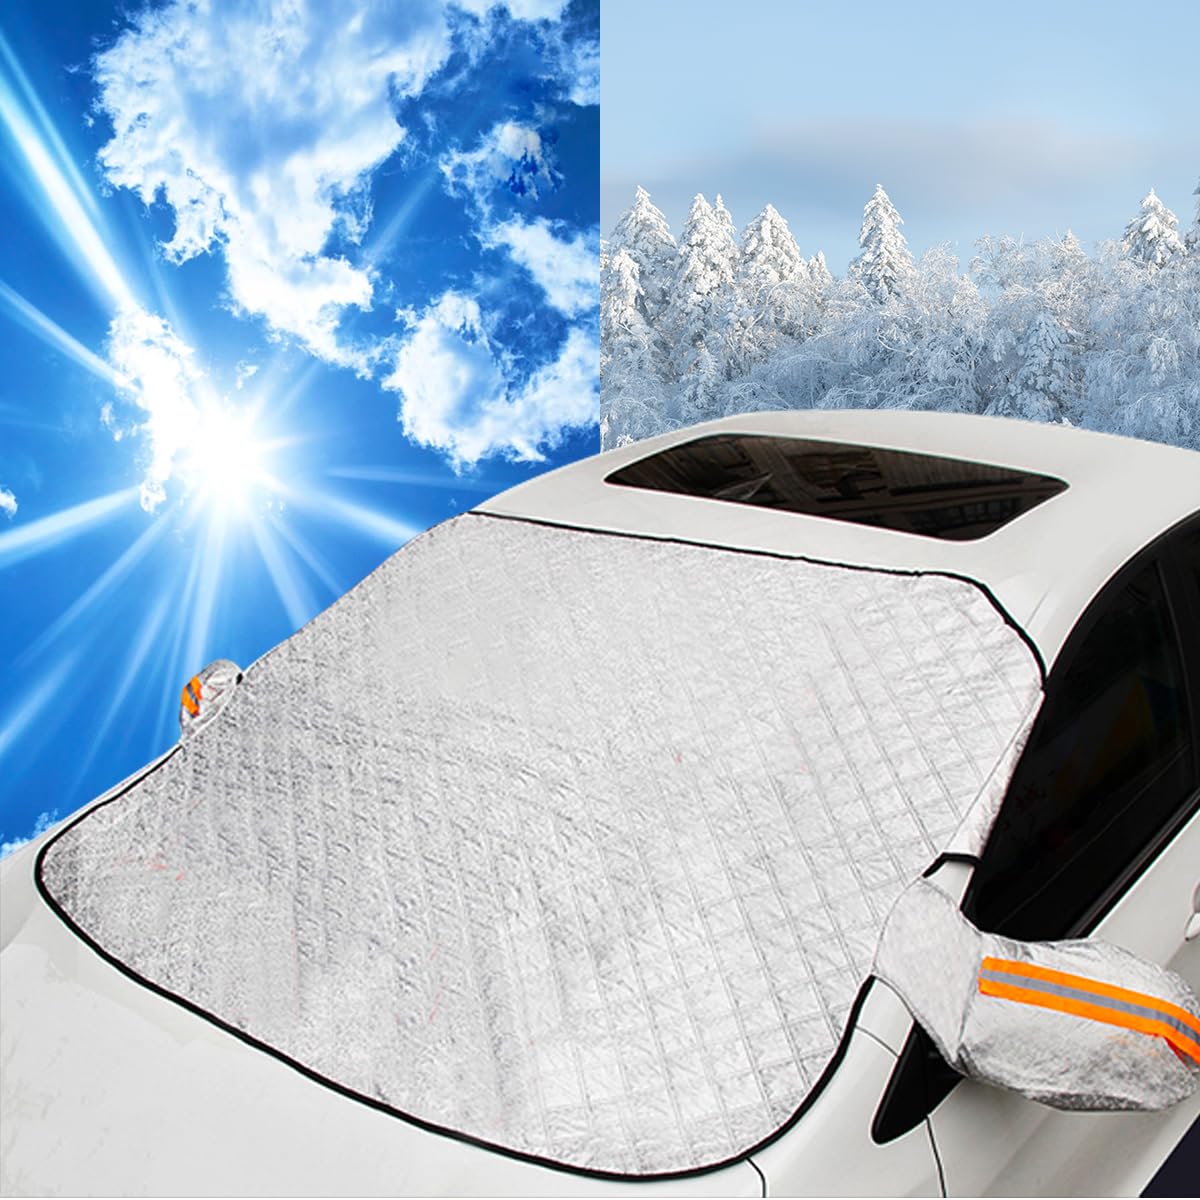 Fafaherr Frontscheibenabdeckung Auto Sonnenschutz Windschutzscheiben Abdeckung mit Magnet Fixierung Auto Frostschutz Abdeckung Faltbare Autoabdeckung gegen Sonne/Staub/EIS/Schnee/Frost, 160 x 130 cm von Fafaherr